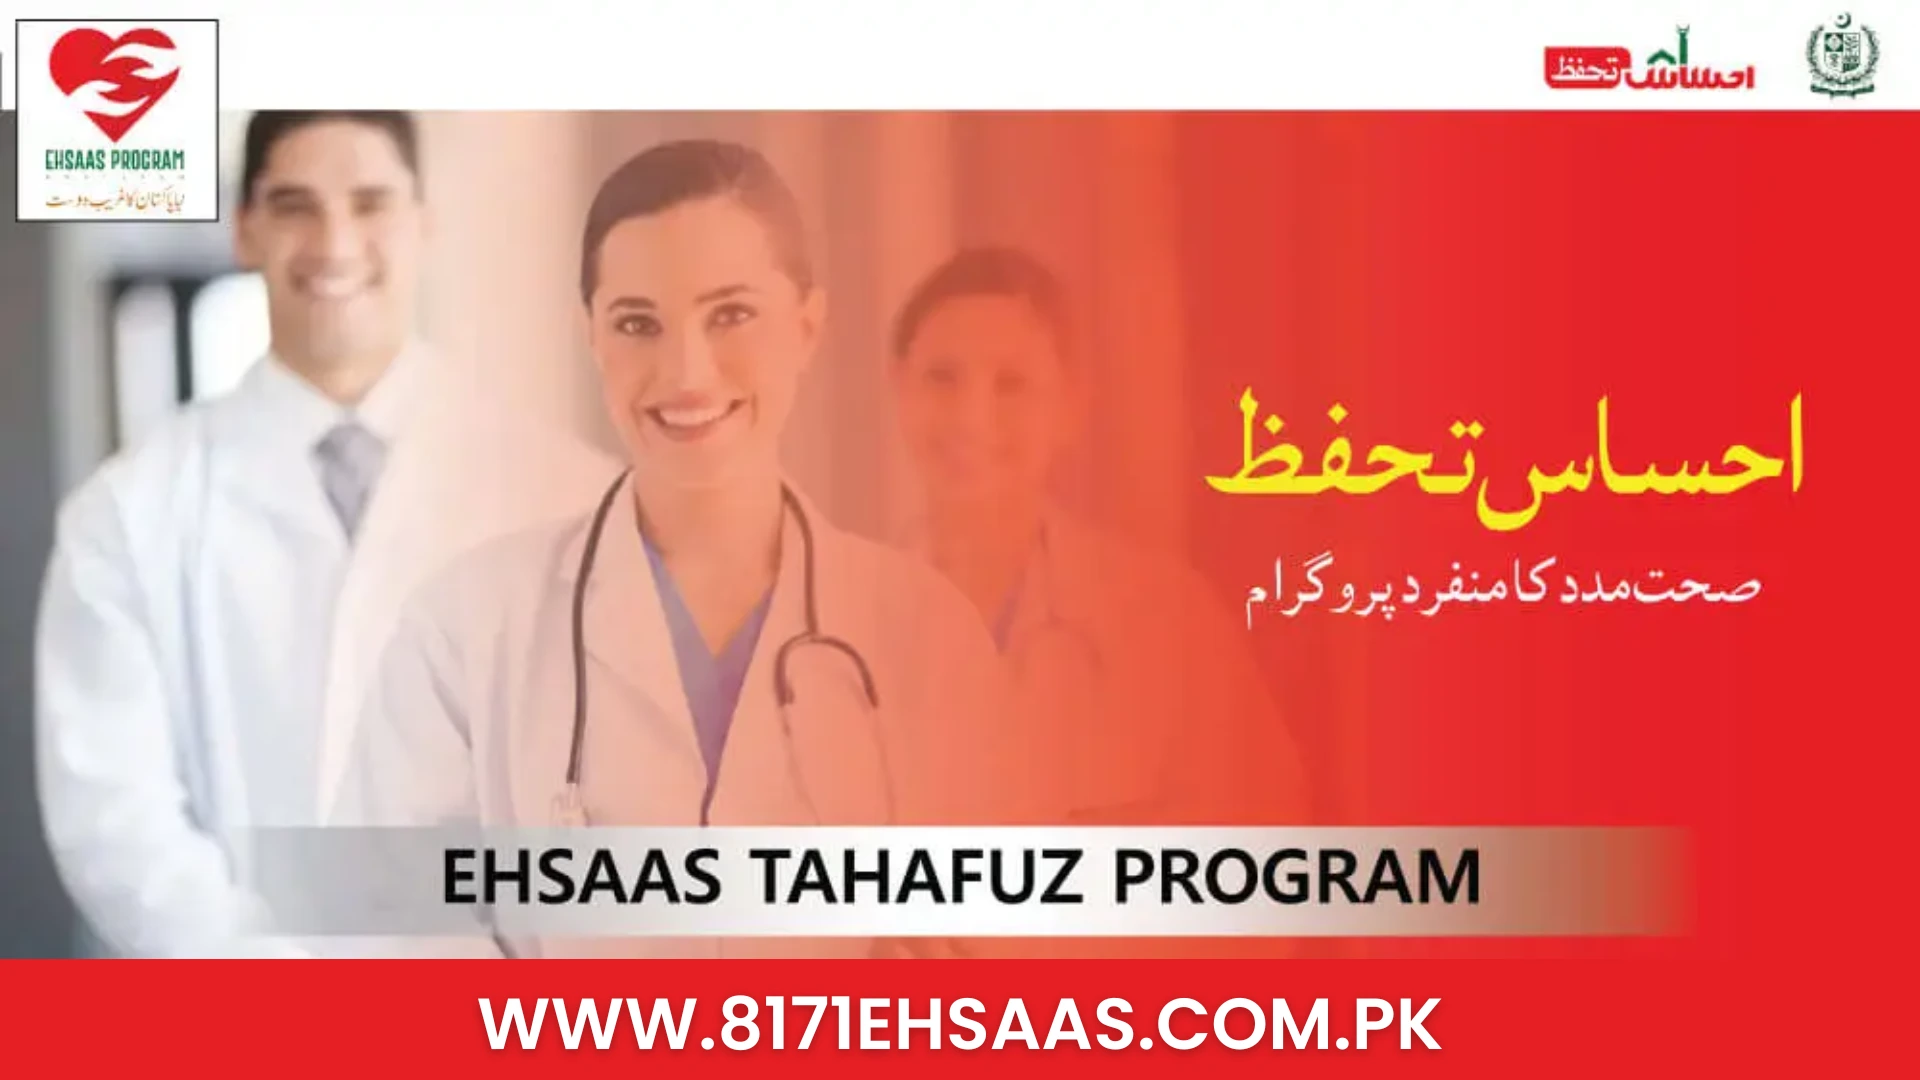 Ehsaas Tahafuz Program Online Registration